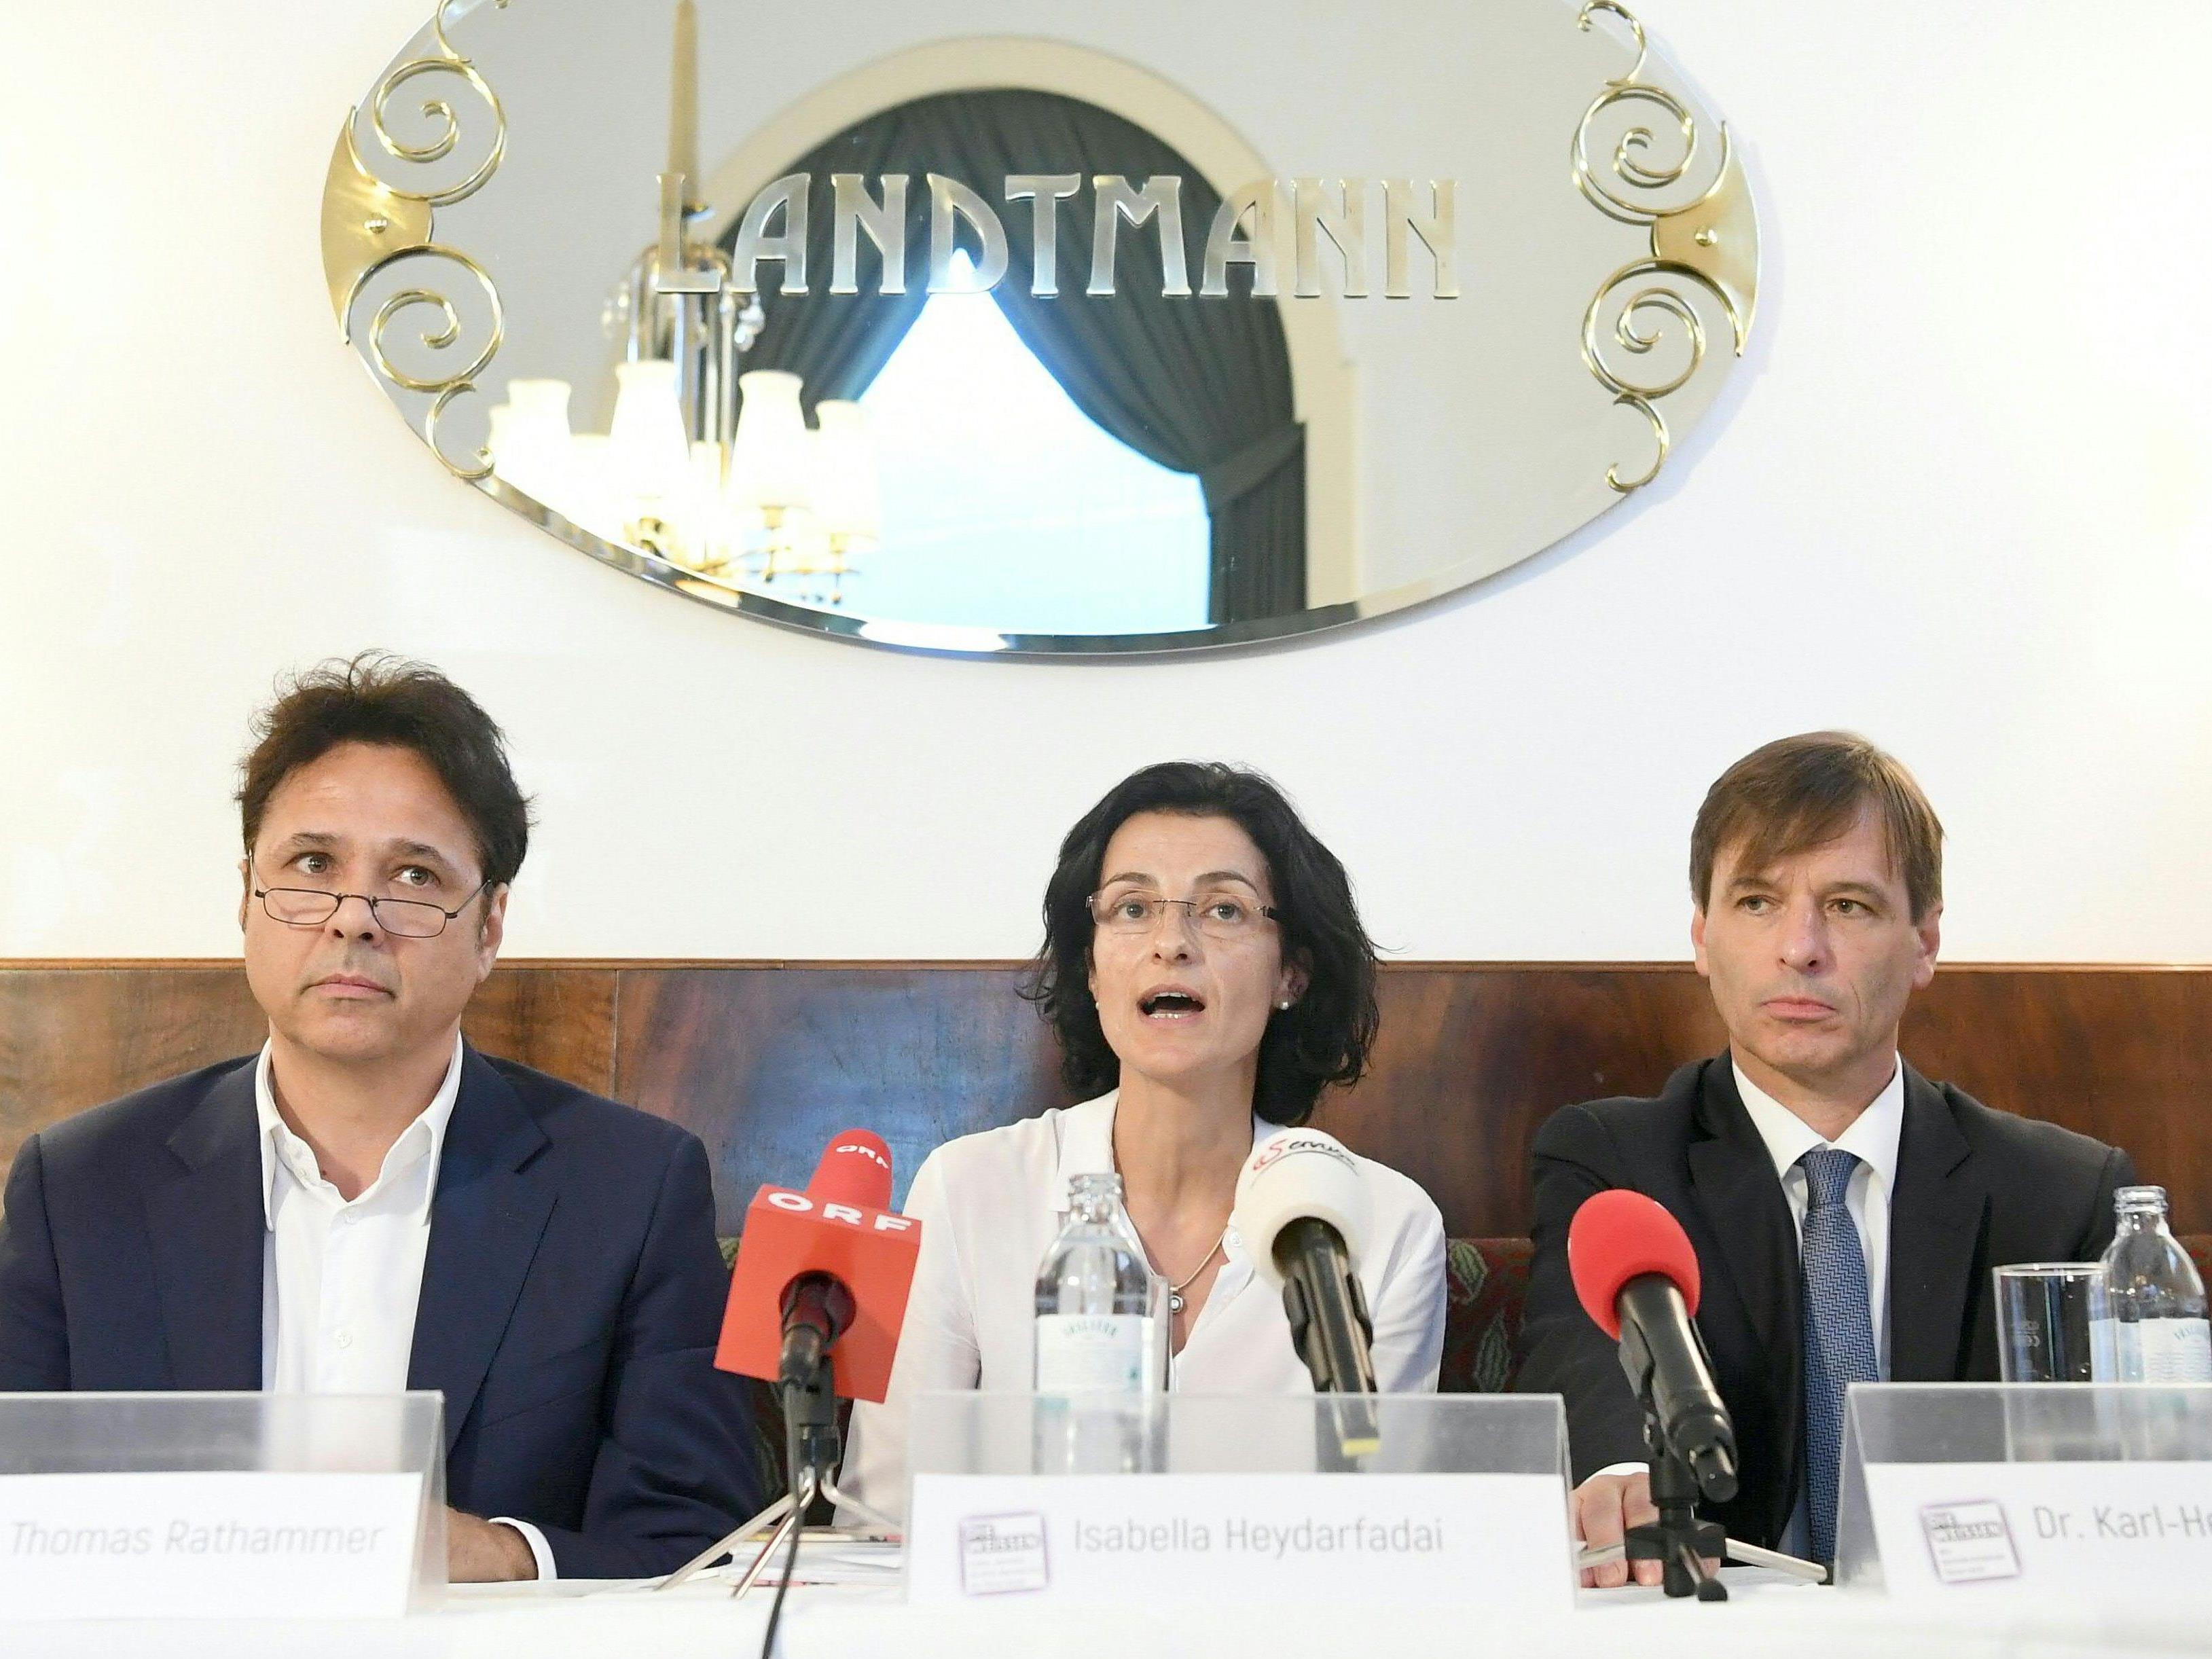 Die Weißen bei der Pressekonferenz in Wien.